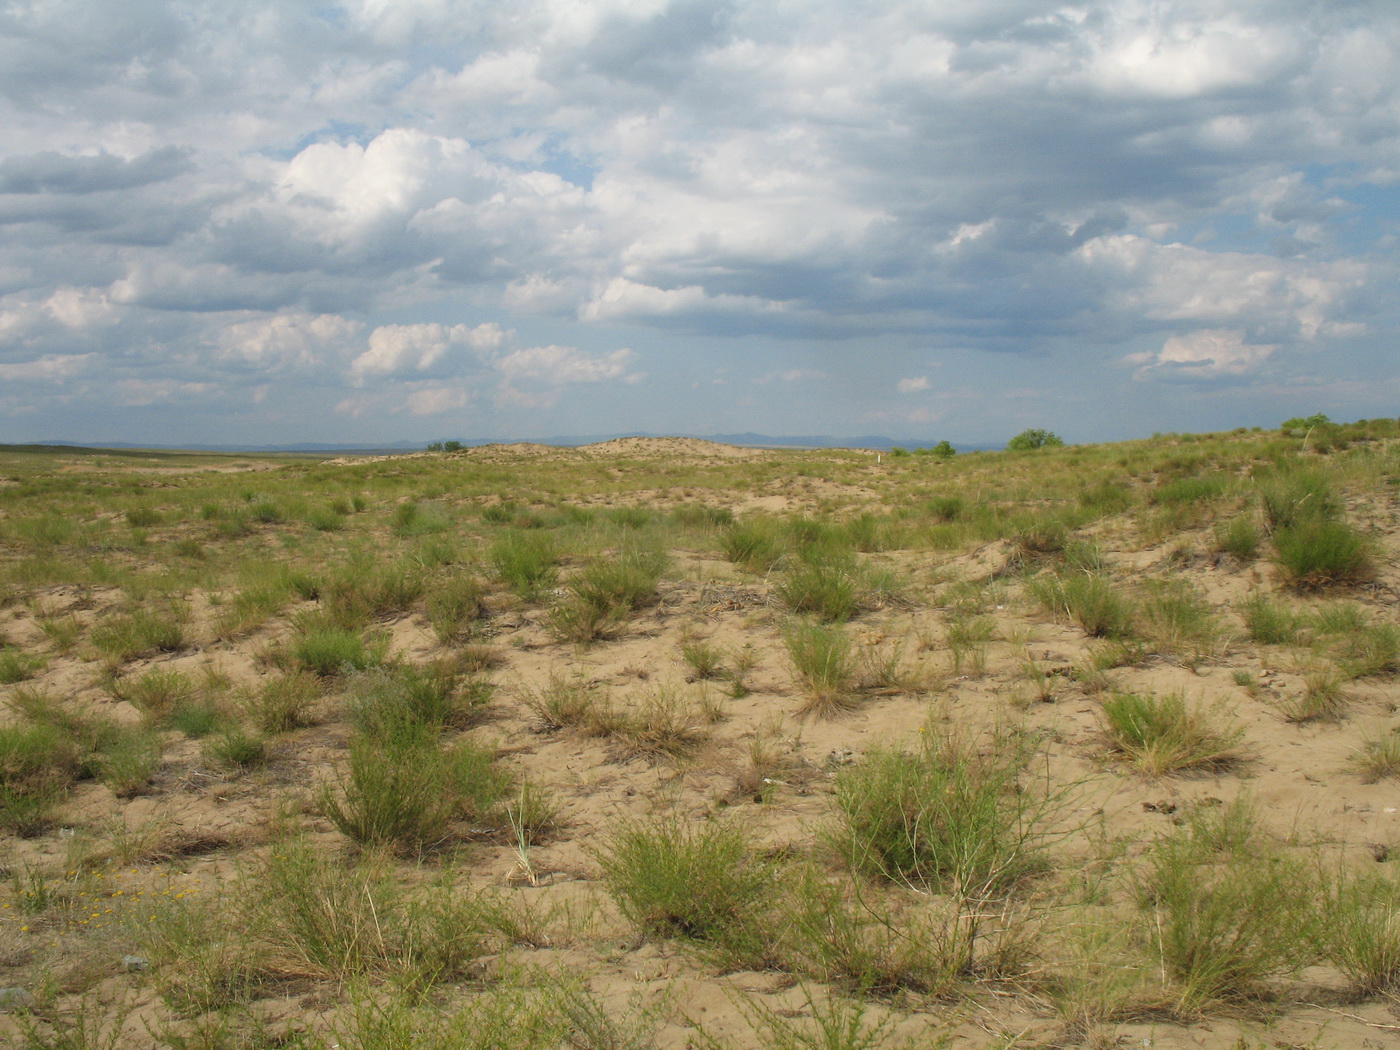 Казнаковская переправа, image of landscape/habitat.